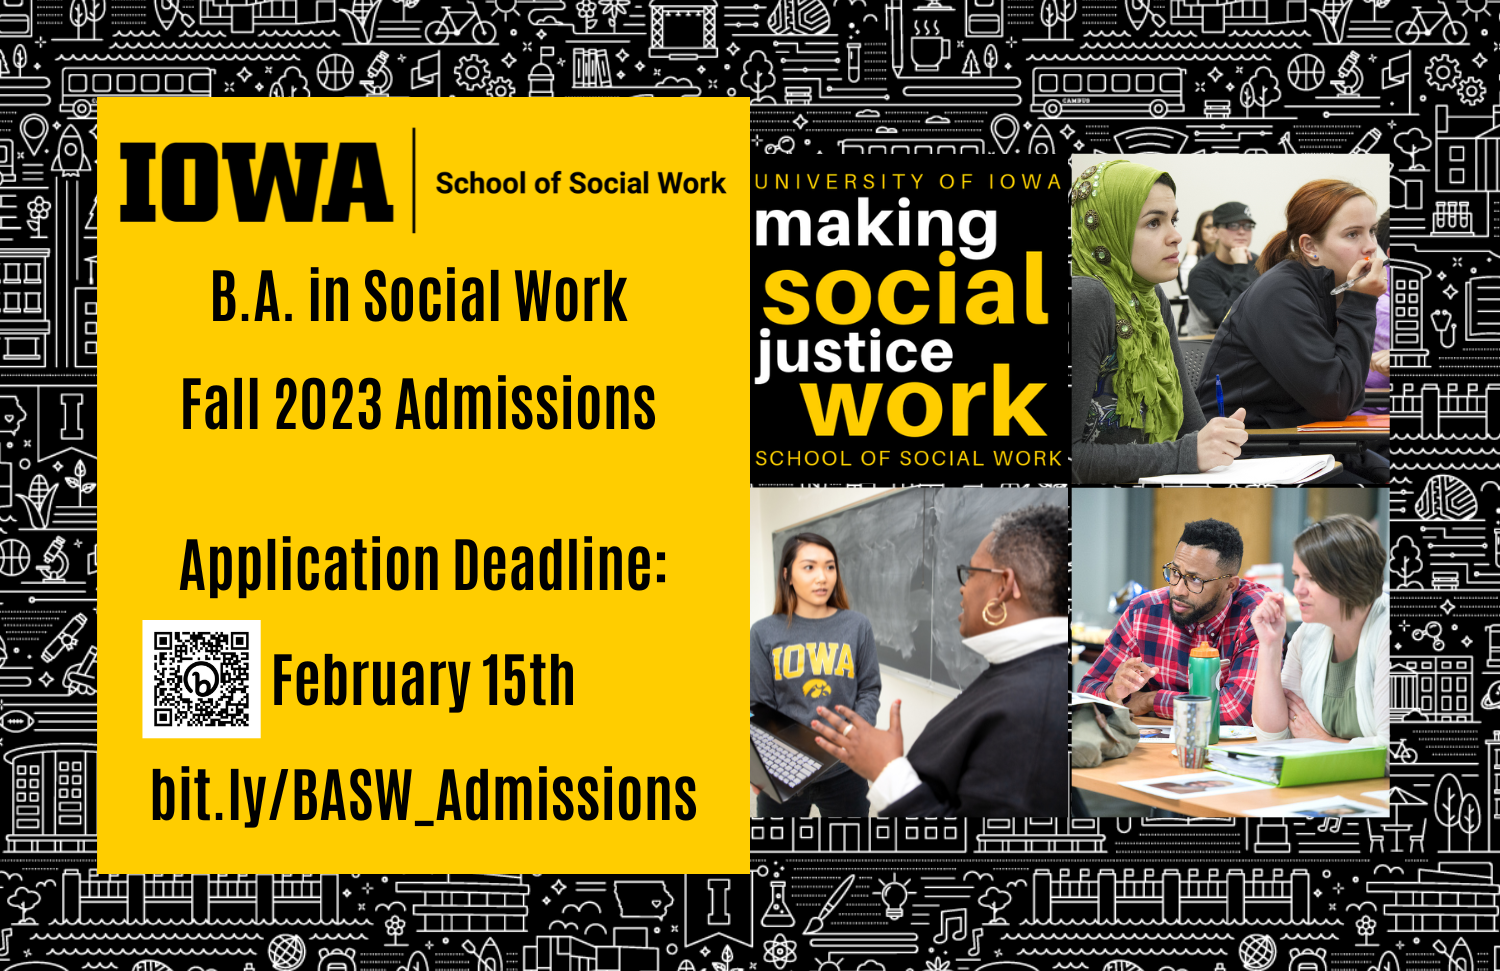 B.A. in Social Work Application Deadline Feb. 15